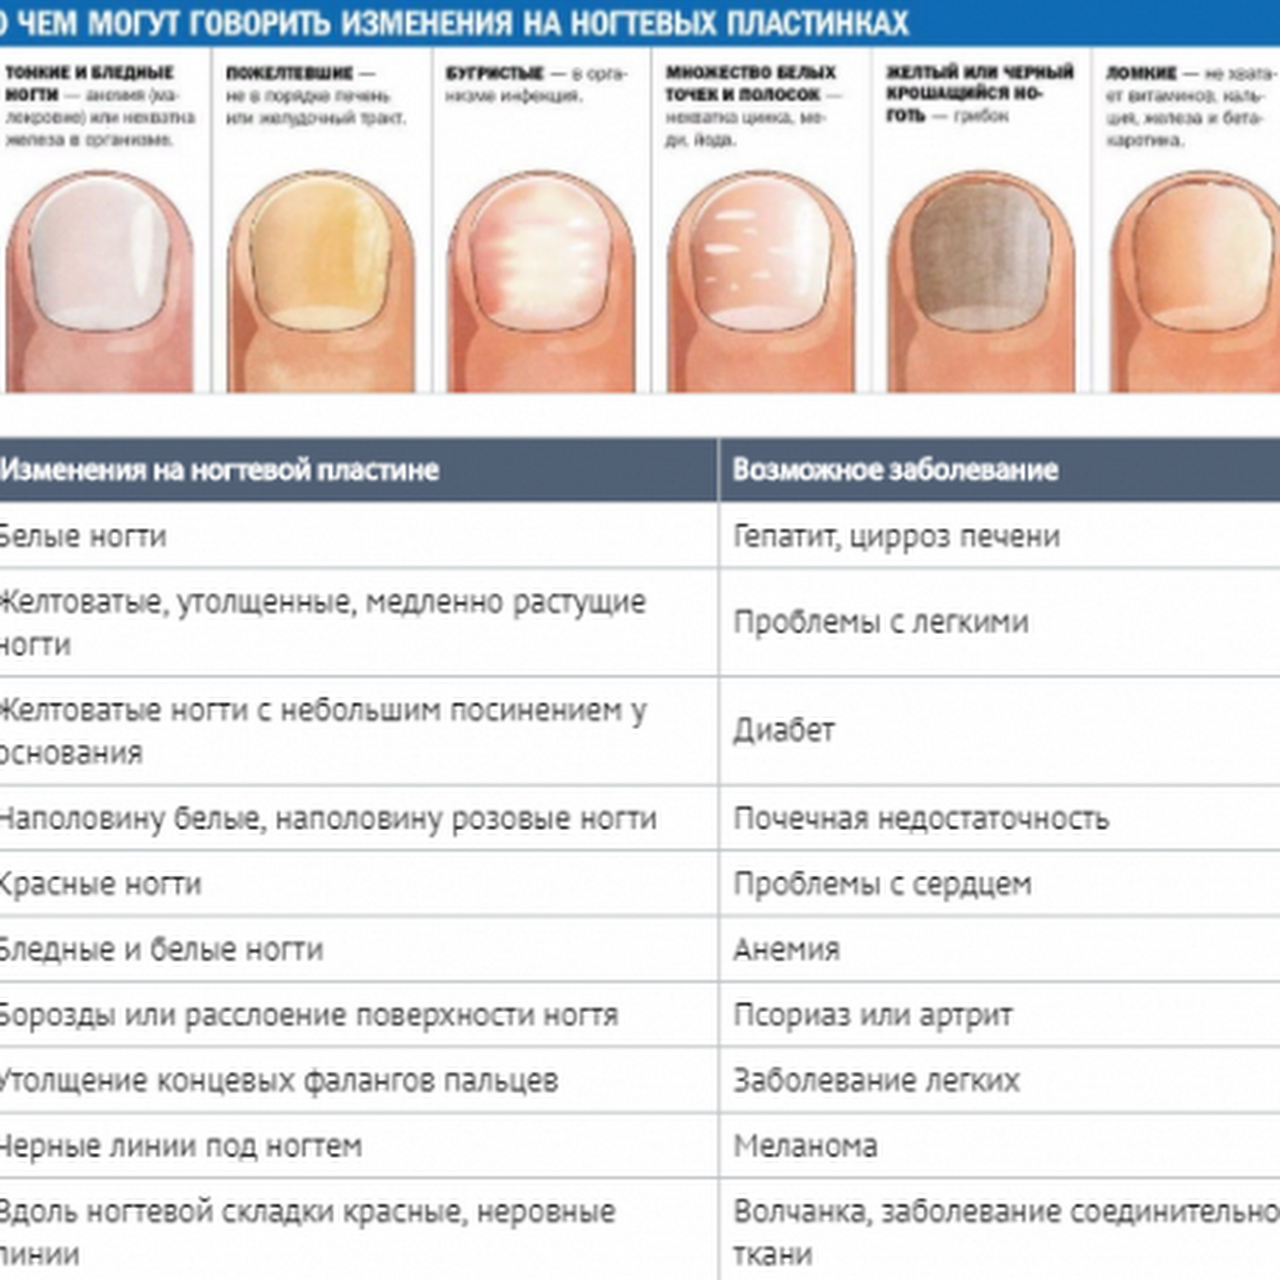 Как узнать какой болезнь. Определение болезни по состоянию ногтей. Заболевания ногтей на руках таблица описание. Как определить по цвету ногтей заболевание. Выявление болезни по ногтям.